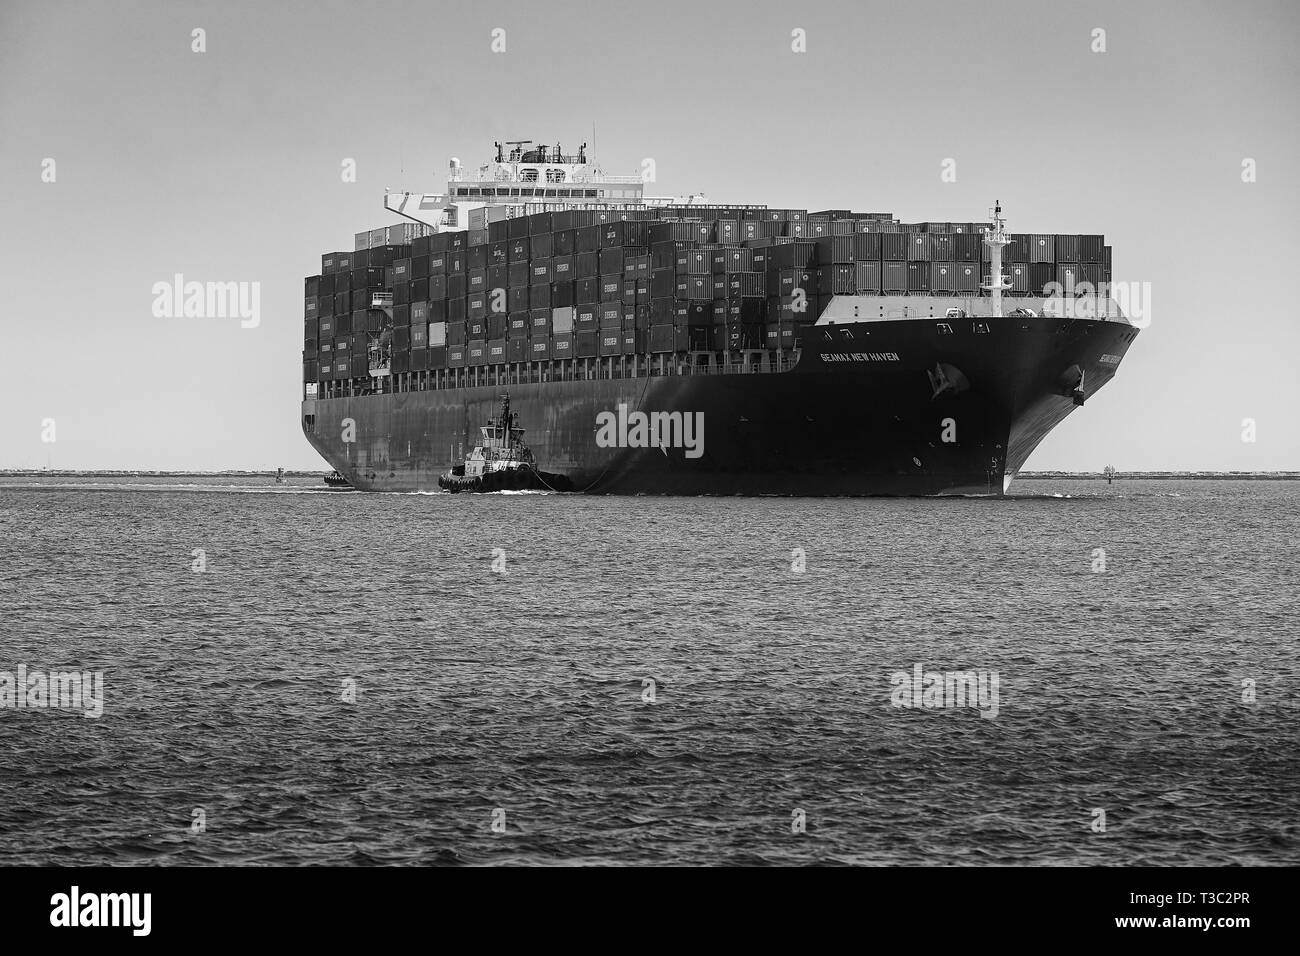 Foto in bianco e nero della nave portacontainer, SEAMAX NEW HAVEN, che entra nel canale principale di Los Angeles nel porto di Los Angeles, California, USA. Foto Stock